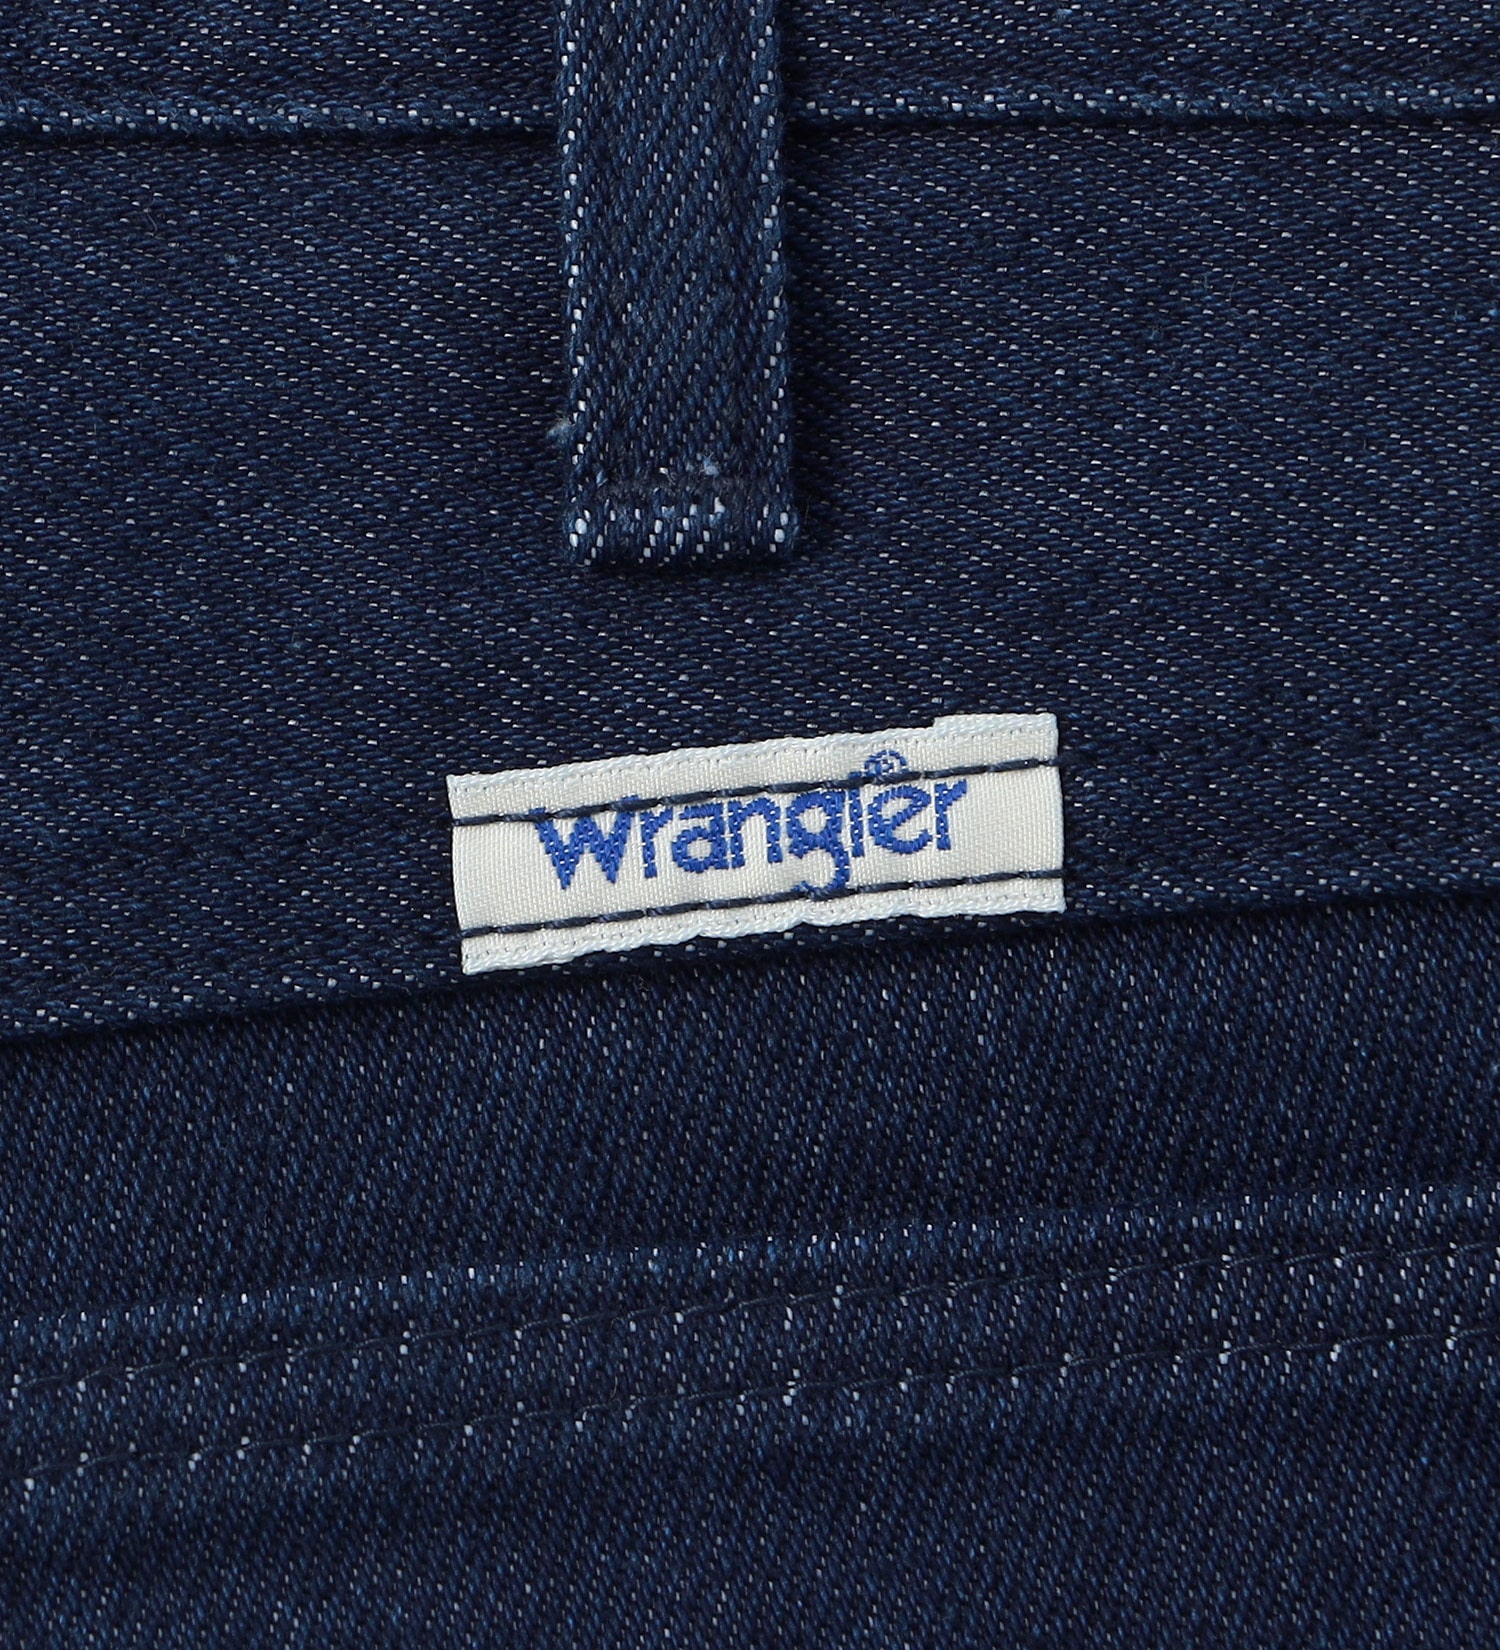 Wrangler(ラングラー)の【WEB別注】WRANGLER WRANCHER/ランチャー デニムフレアードレスパンツ|パンツ/デニムパンツ/メンズ|インディゴブルー